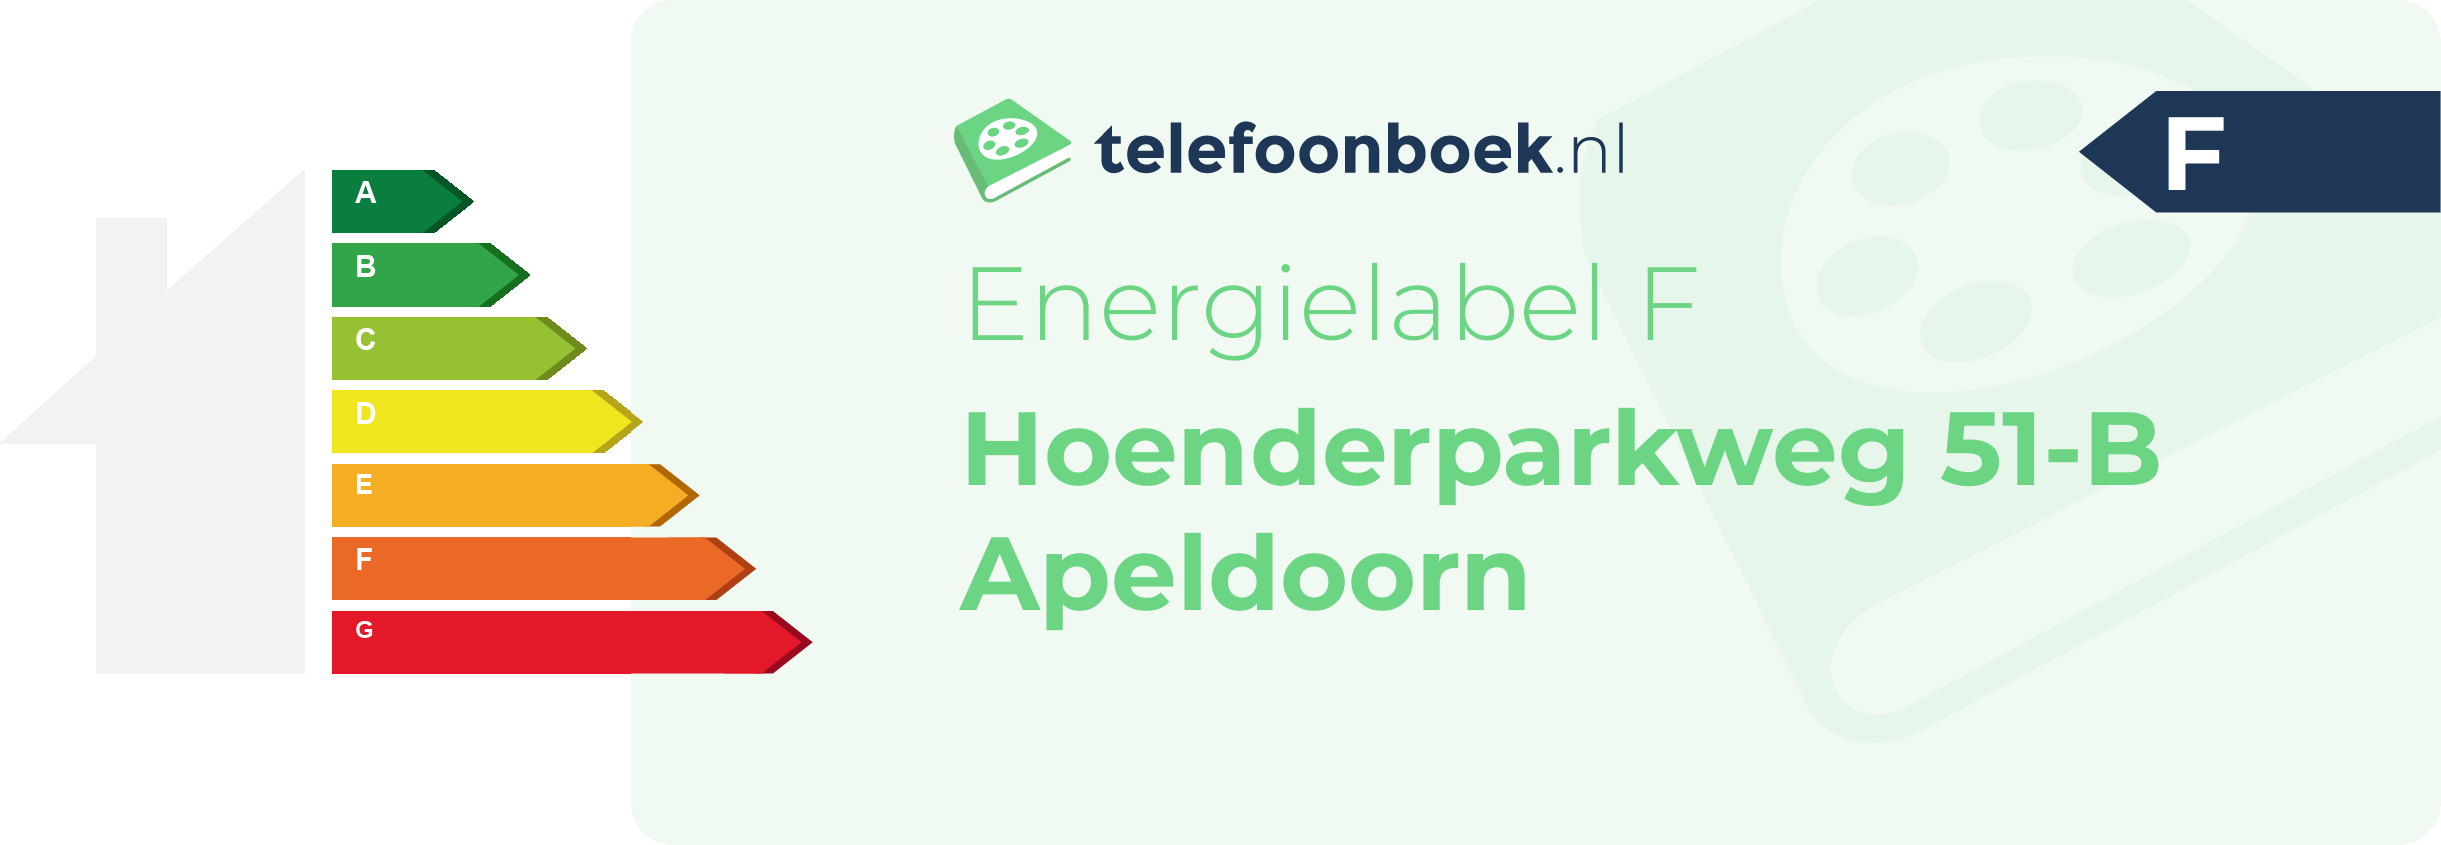 Energielabel Hoenderparkweg 51-B Apeldoorn